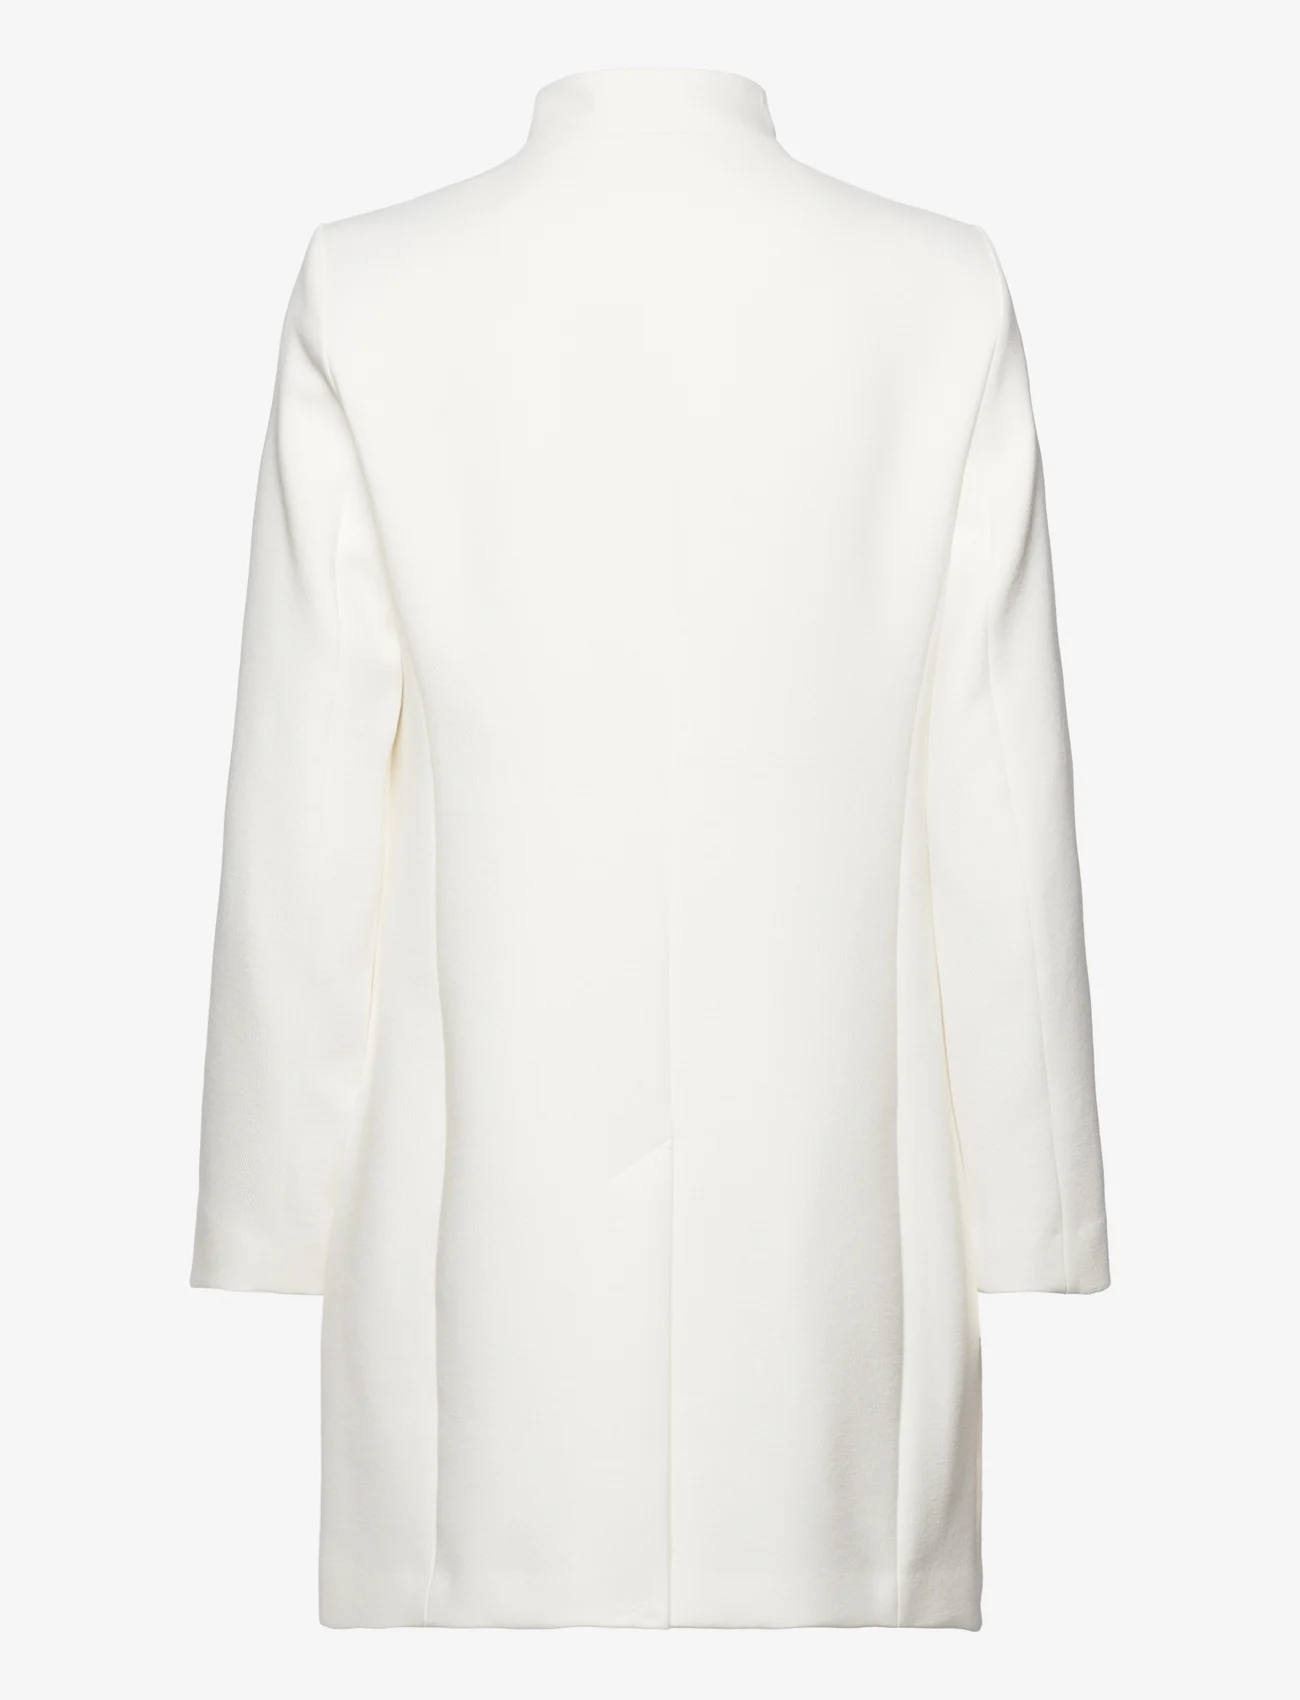 Esprit Casual - Coats woven - light coats - ice 2 - 1